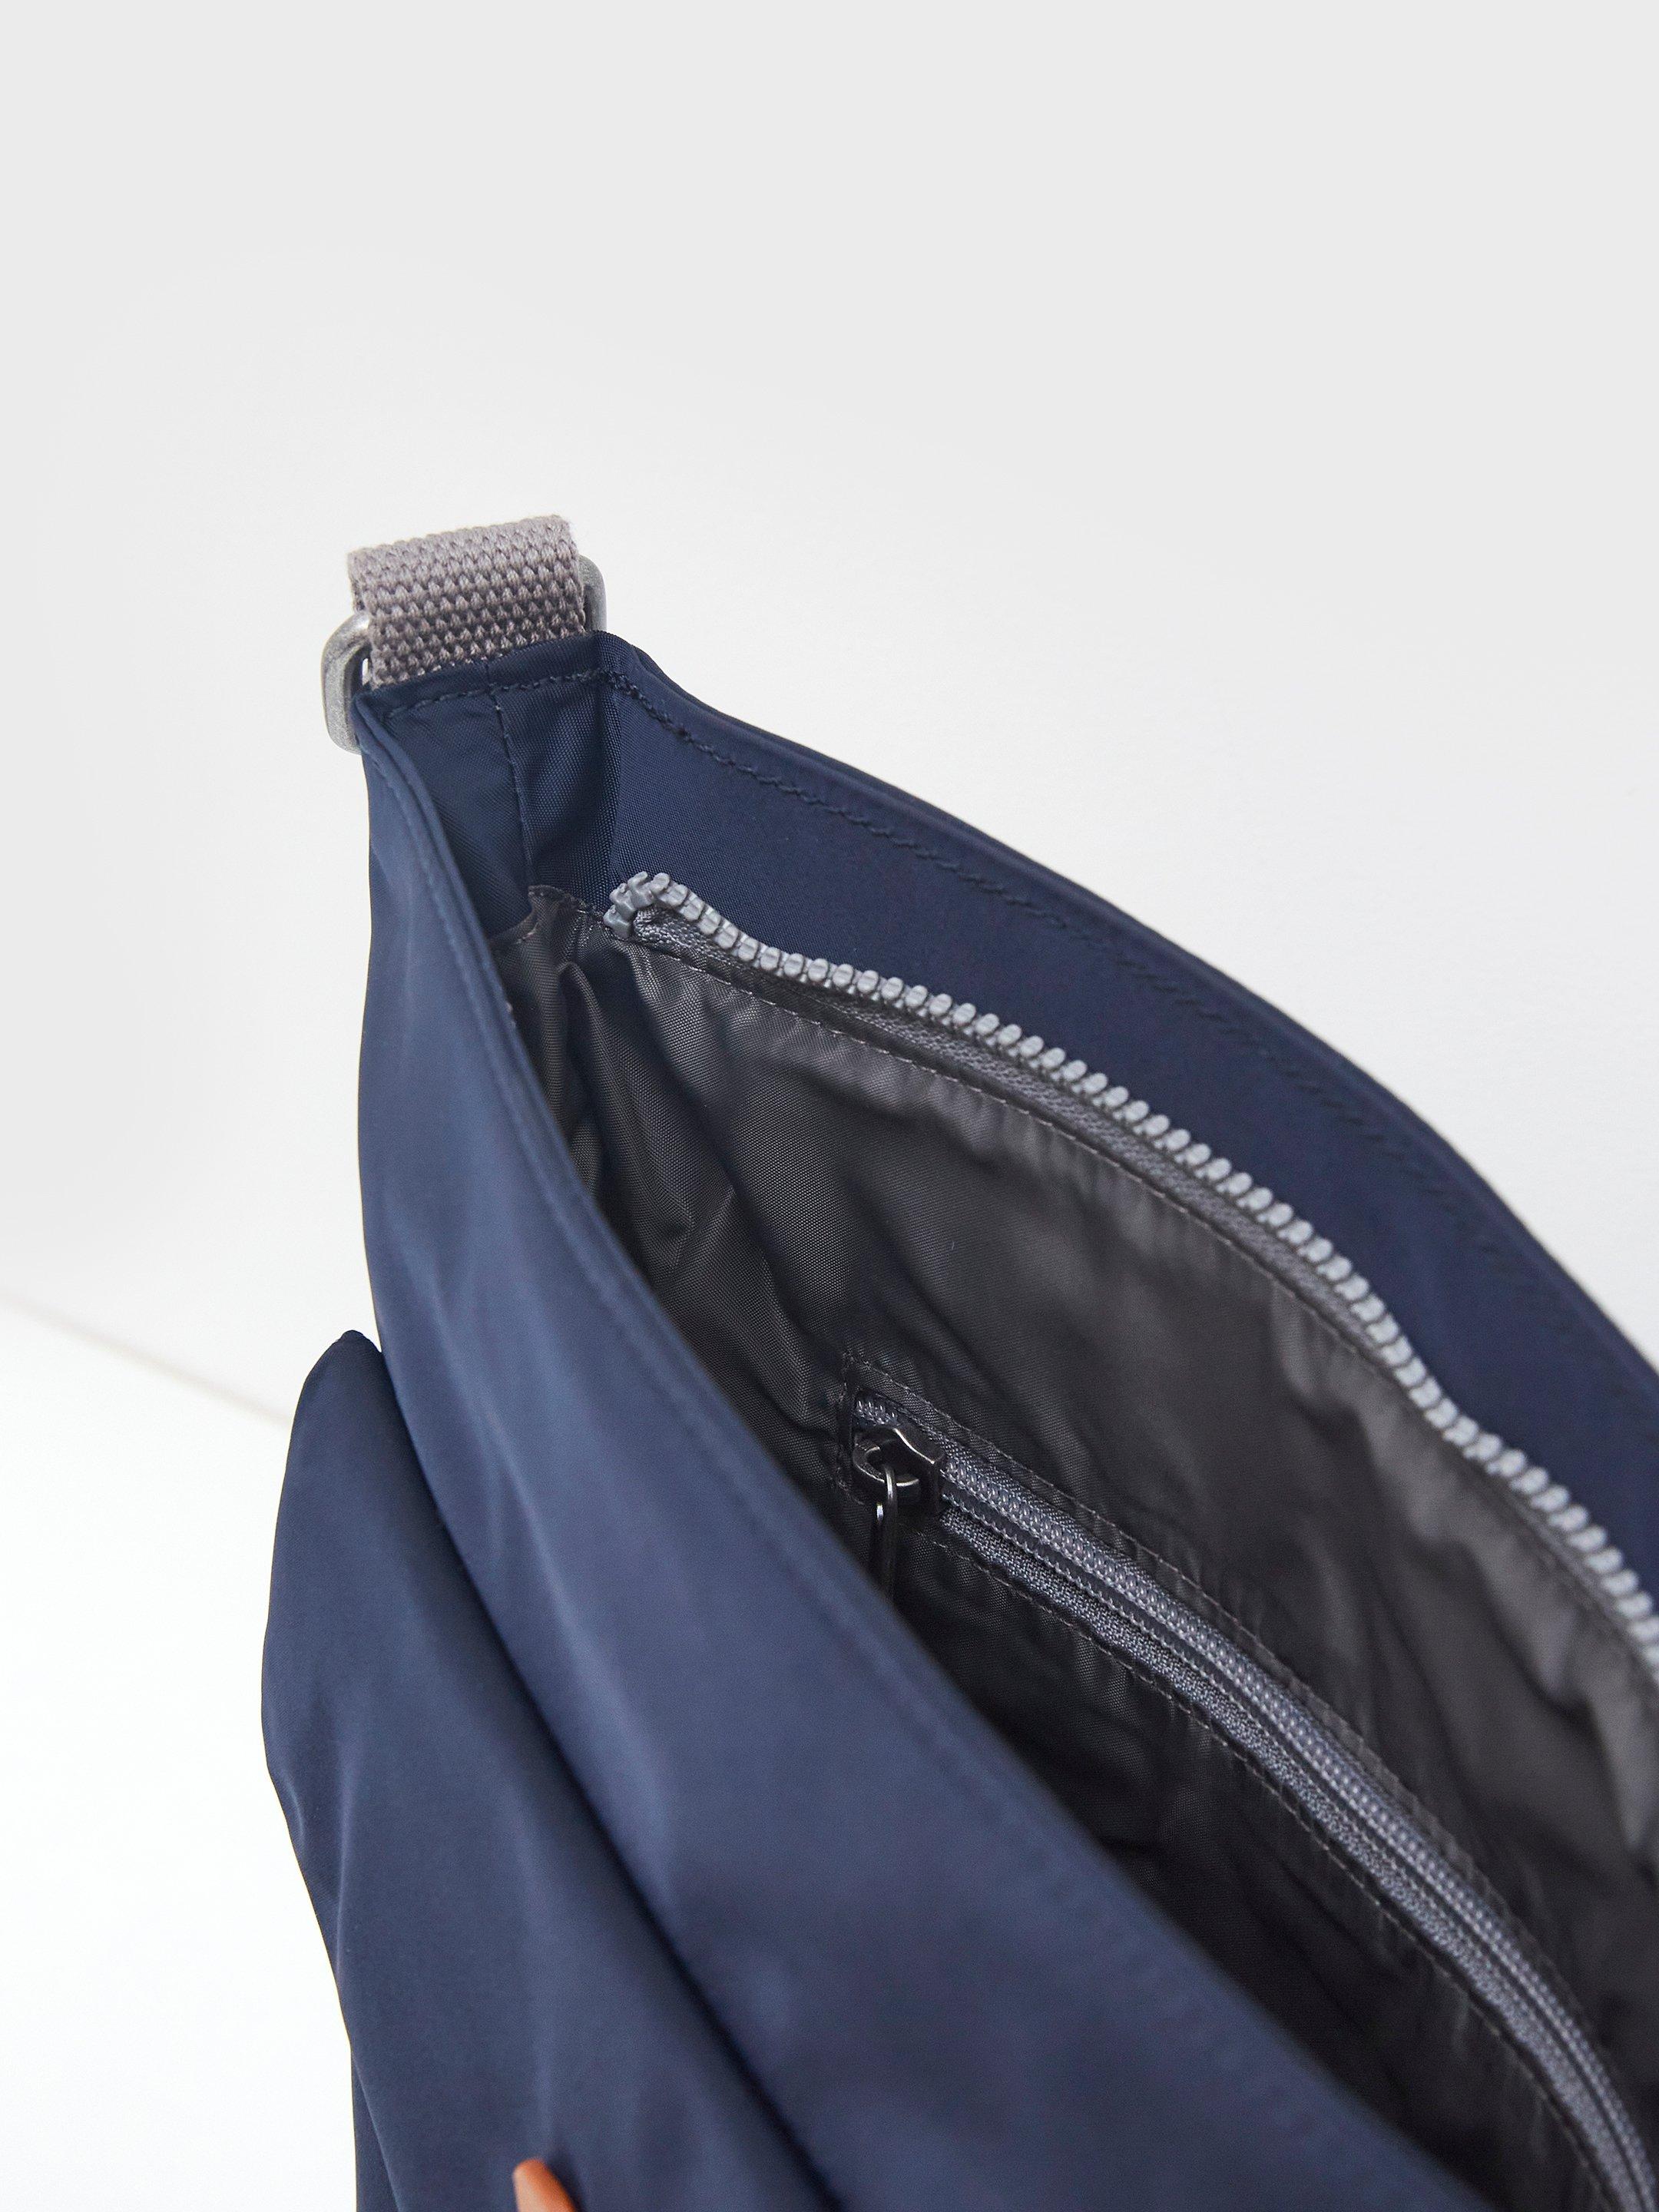 Recycled Roka Kennington C Bag in DARK NAVY - FLAT DETAIL